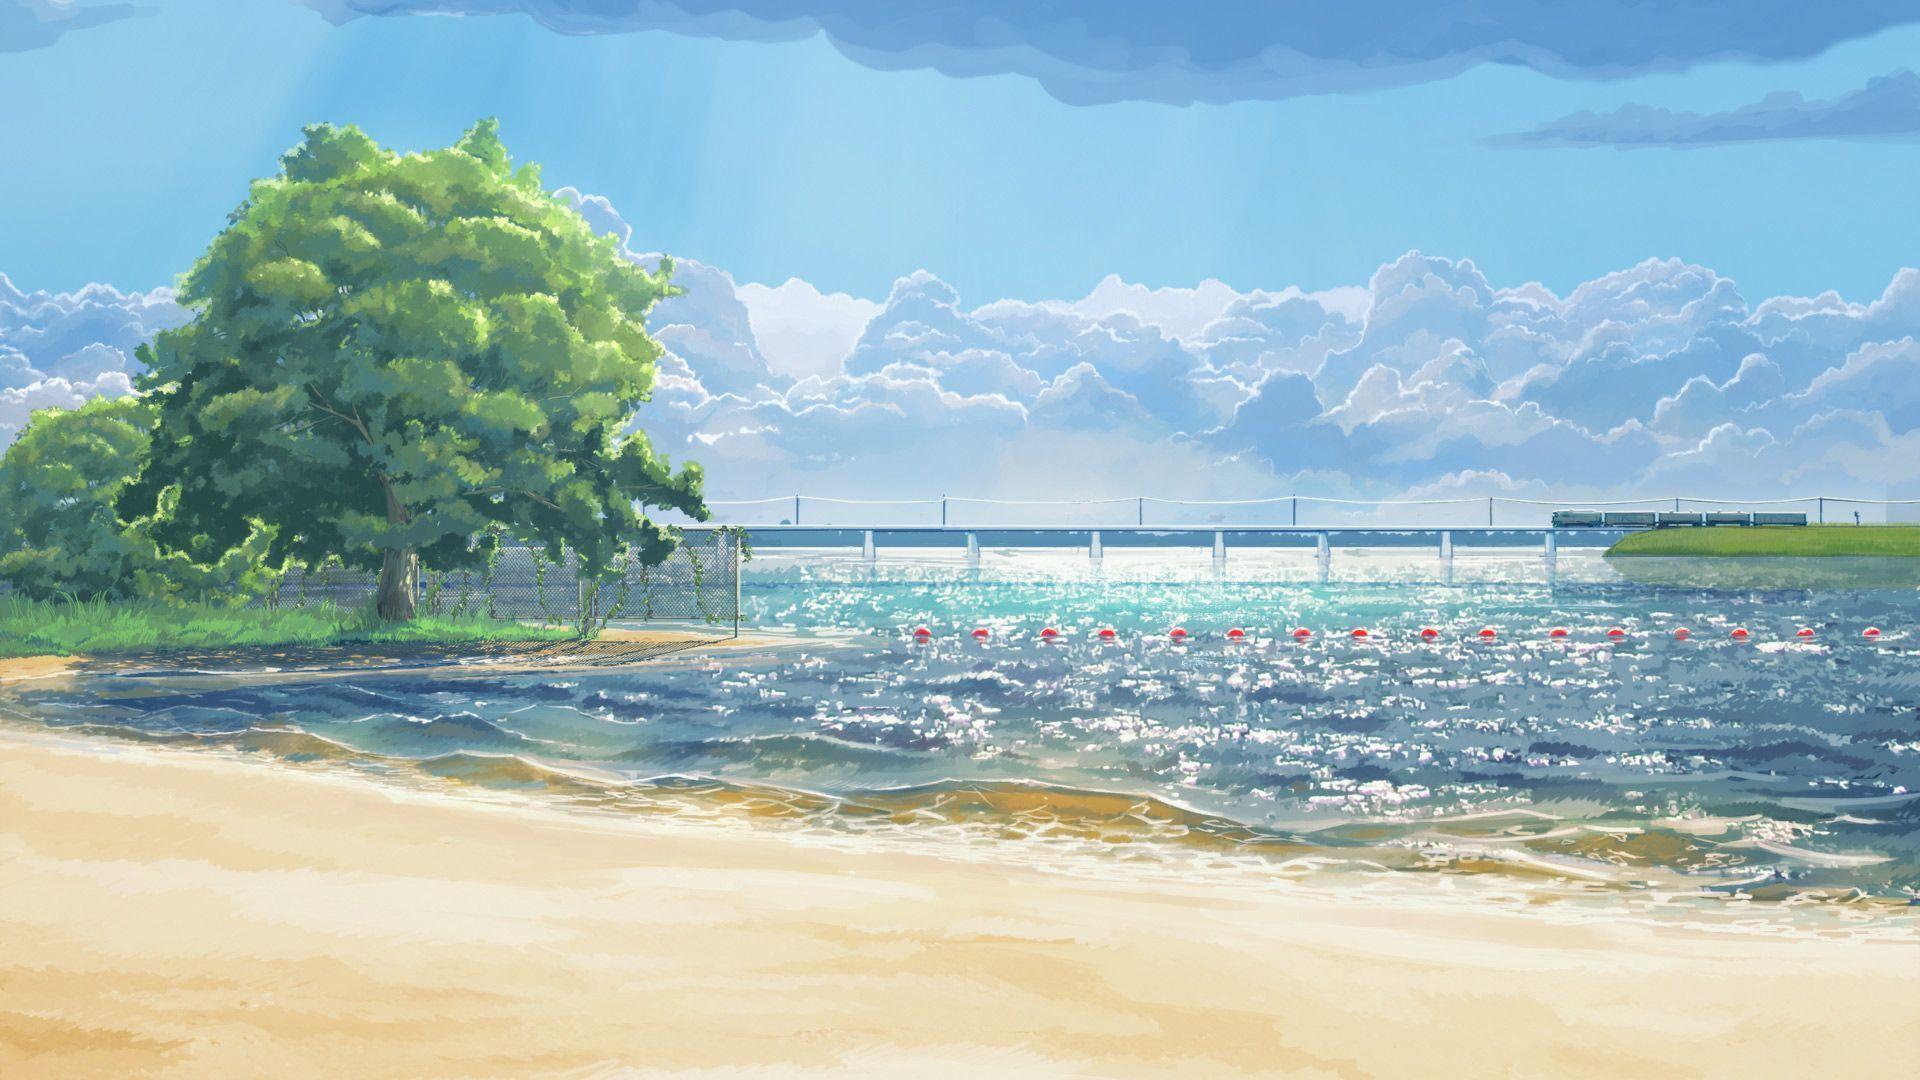 Mùa hè đã đến, và biển là một điểm đến lý tưởng để bạn cùng gia đình và bạn bè thư giãn. Hãy thêm một chút thú vị vào chiếc điện thoại của bạn với những hình nền anime mùa hè biển đầy sáng tạo. Các hình ảnh đầy màu sắc, rực rỡ sẽ khiến bạn cảm thấy như đang sống trong một thế giới hoàn toàn mới.